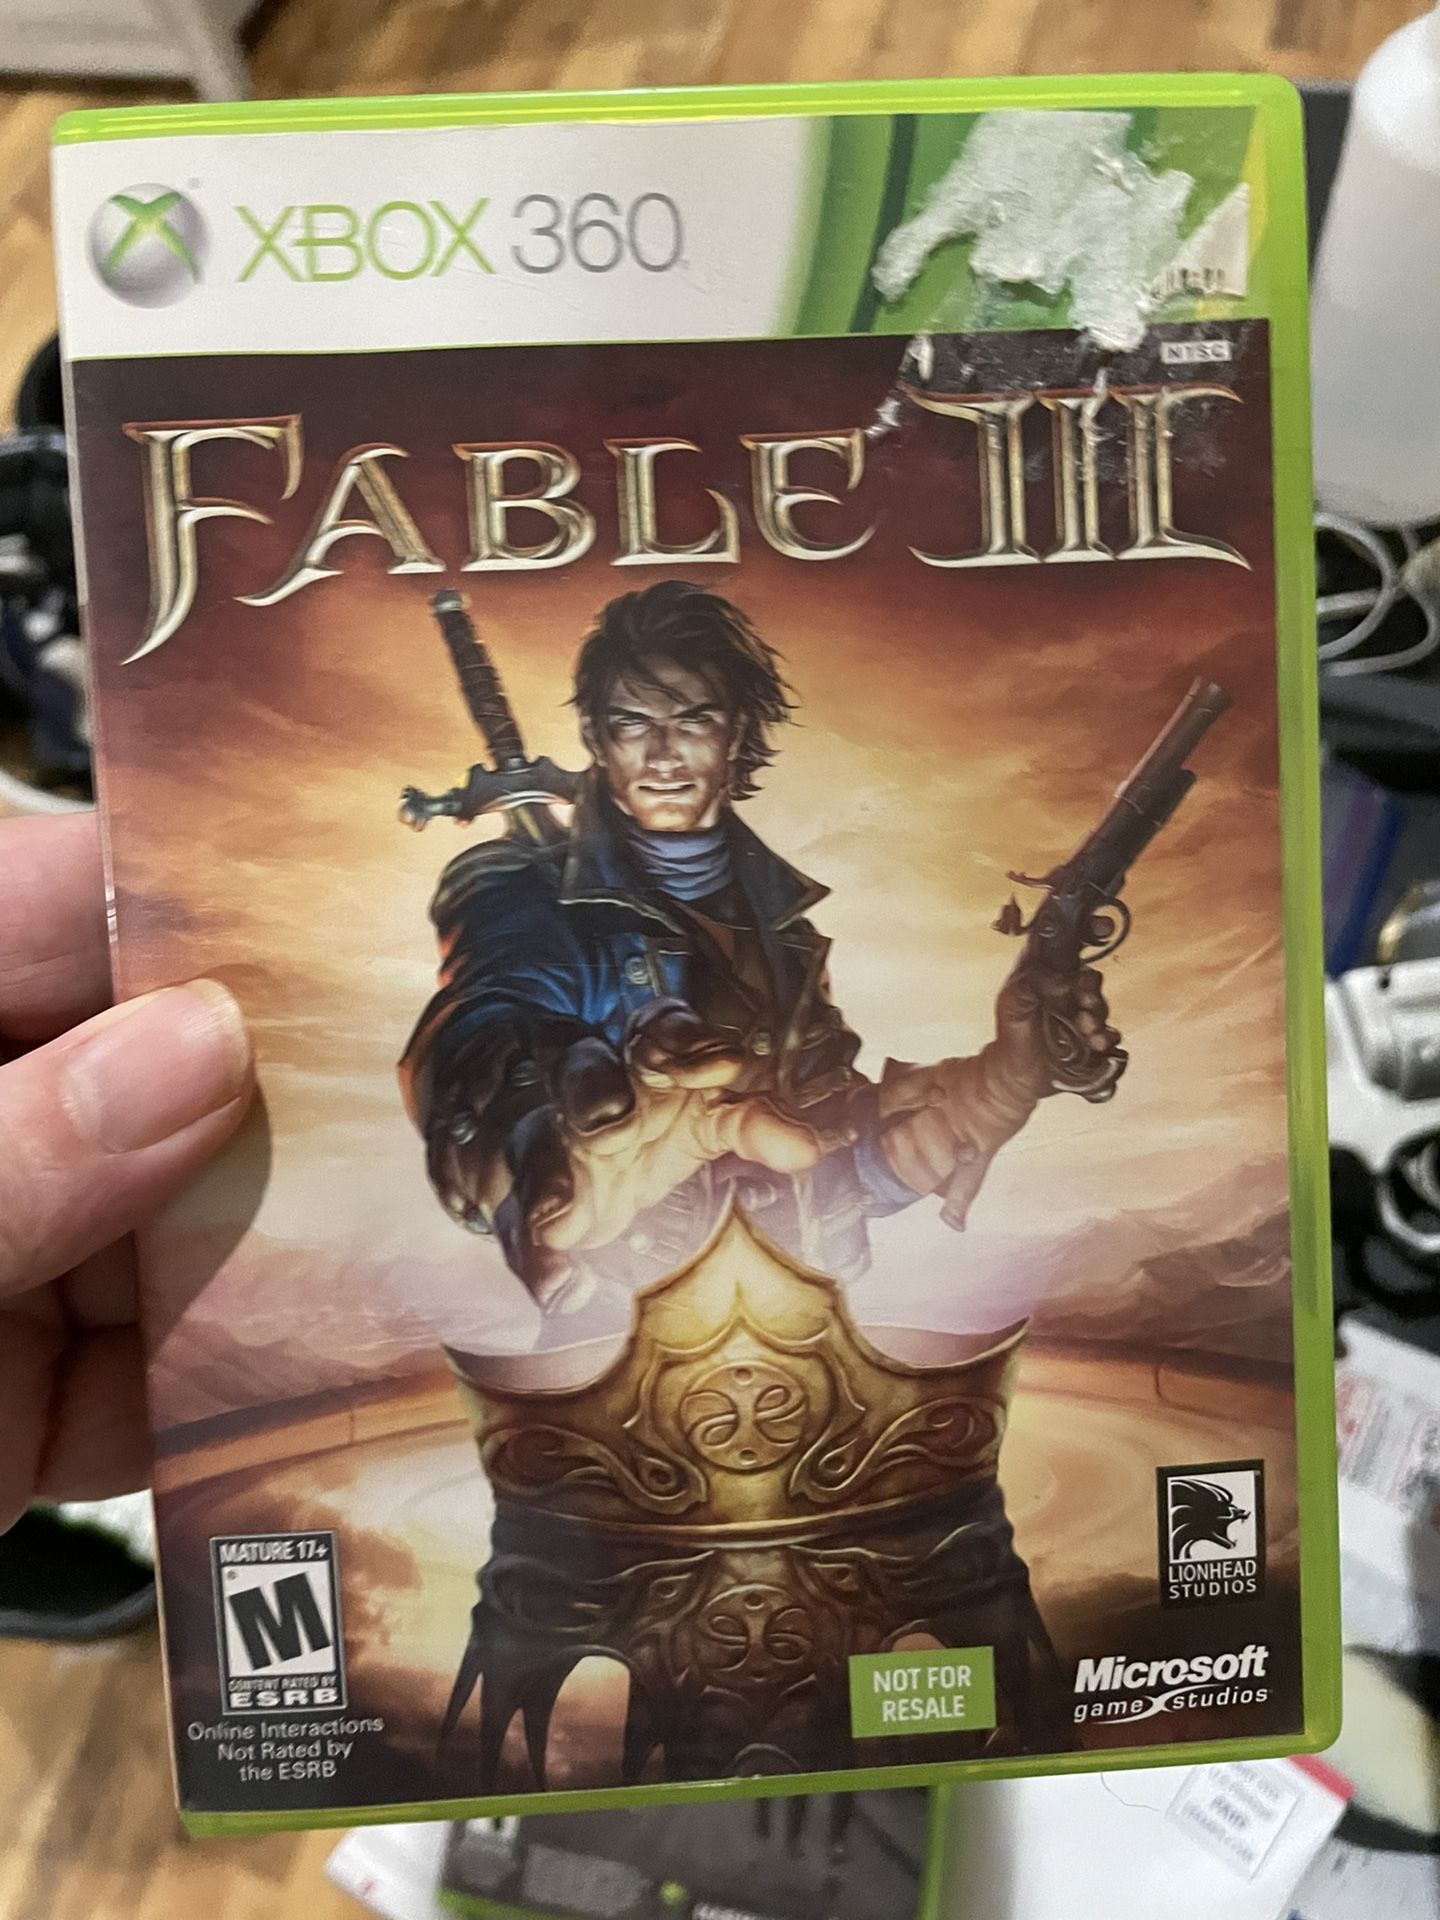 Fable III on Xbox 360